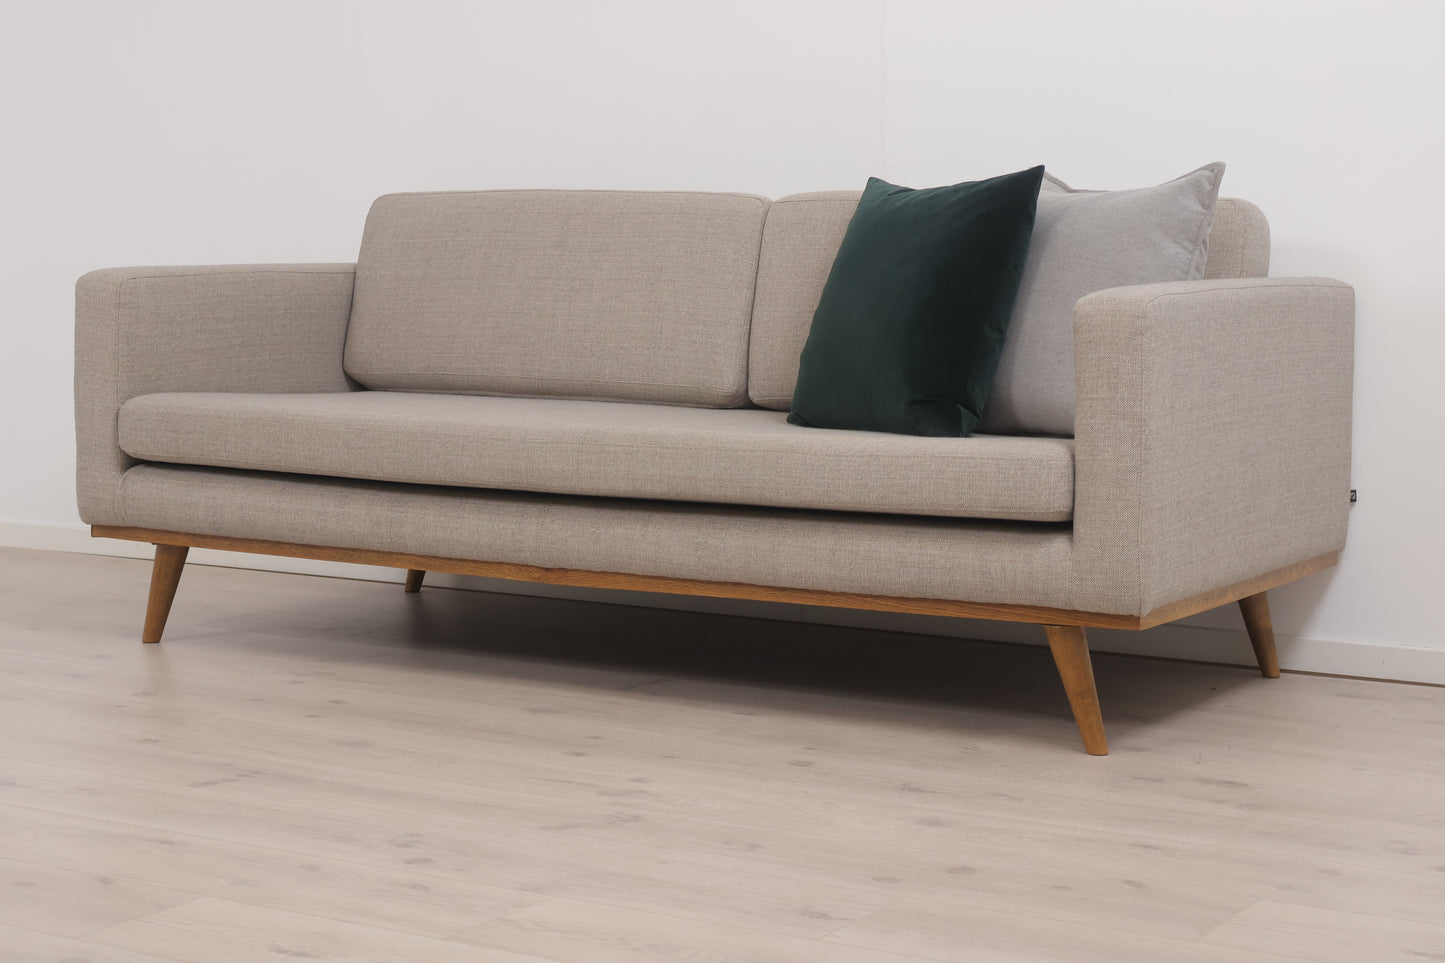 Nyrenset | Beige/grå Johan 3-seter sofa fra Sofacompany